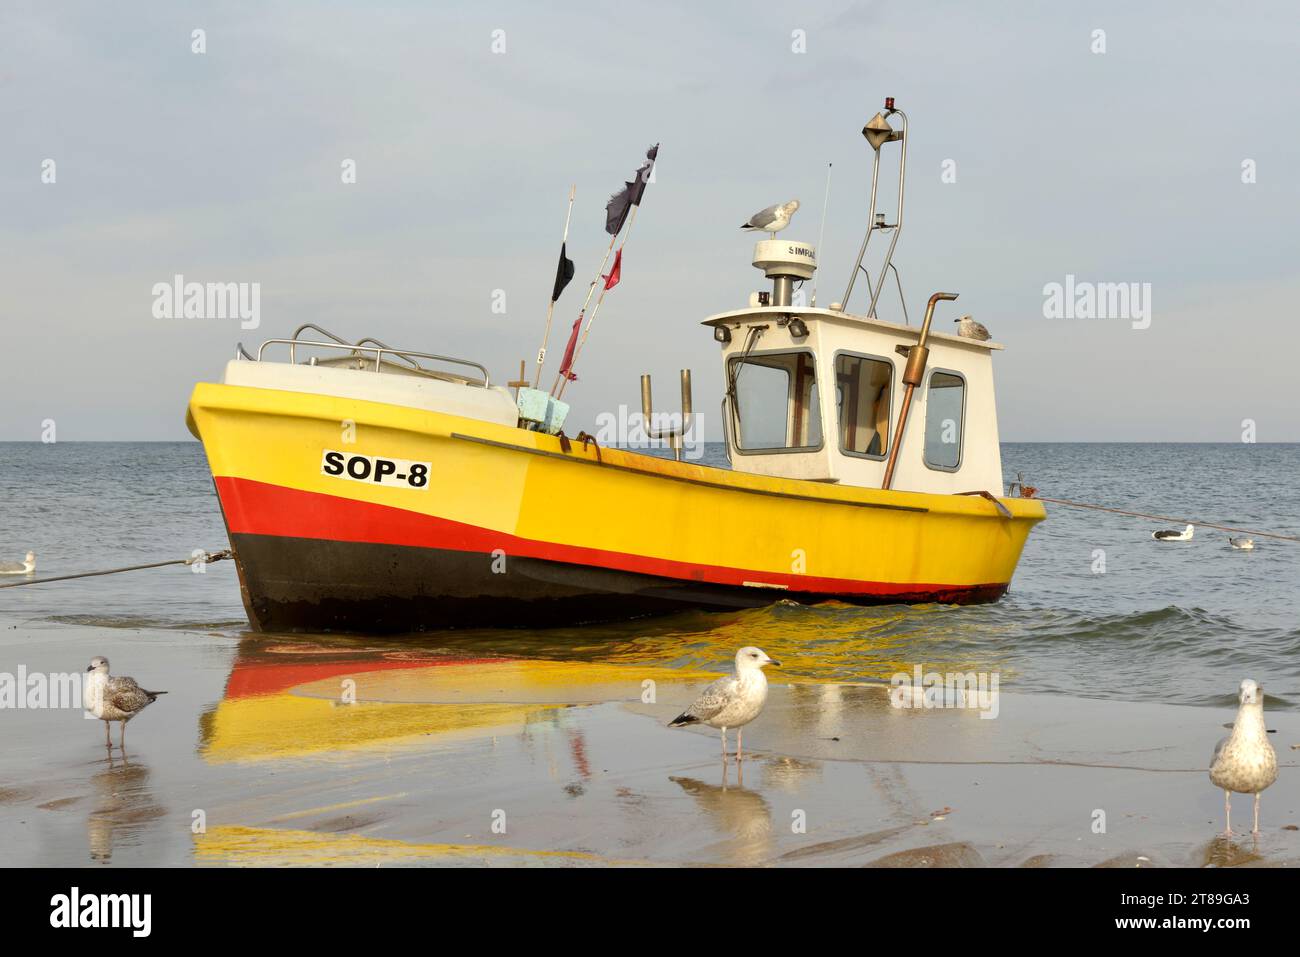 Bateau à moteur de pêche jaune échouée dans l'eau de mer peu profonde et goélands, mer Baltique, Sopot, Pologne, Europe, UE Banque D'Images